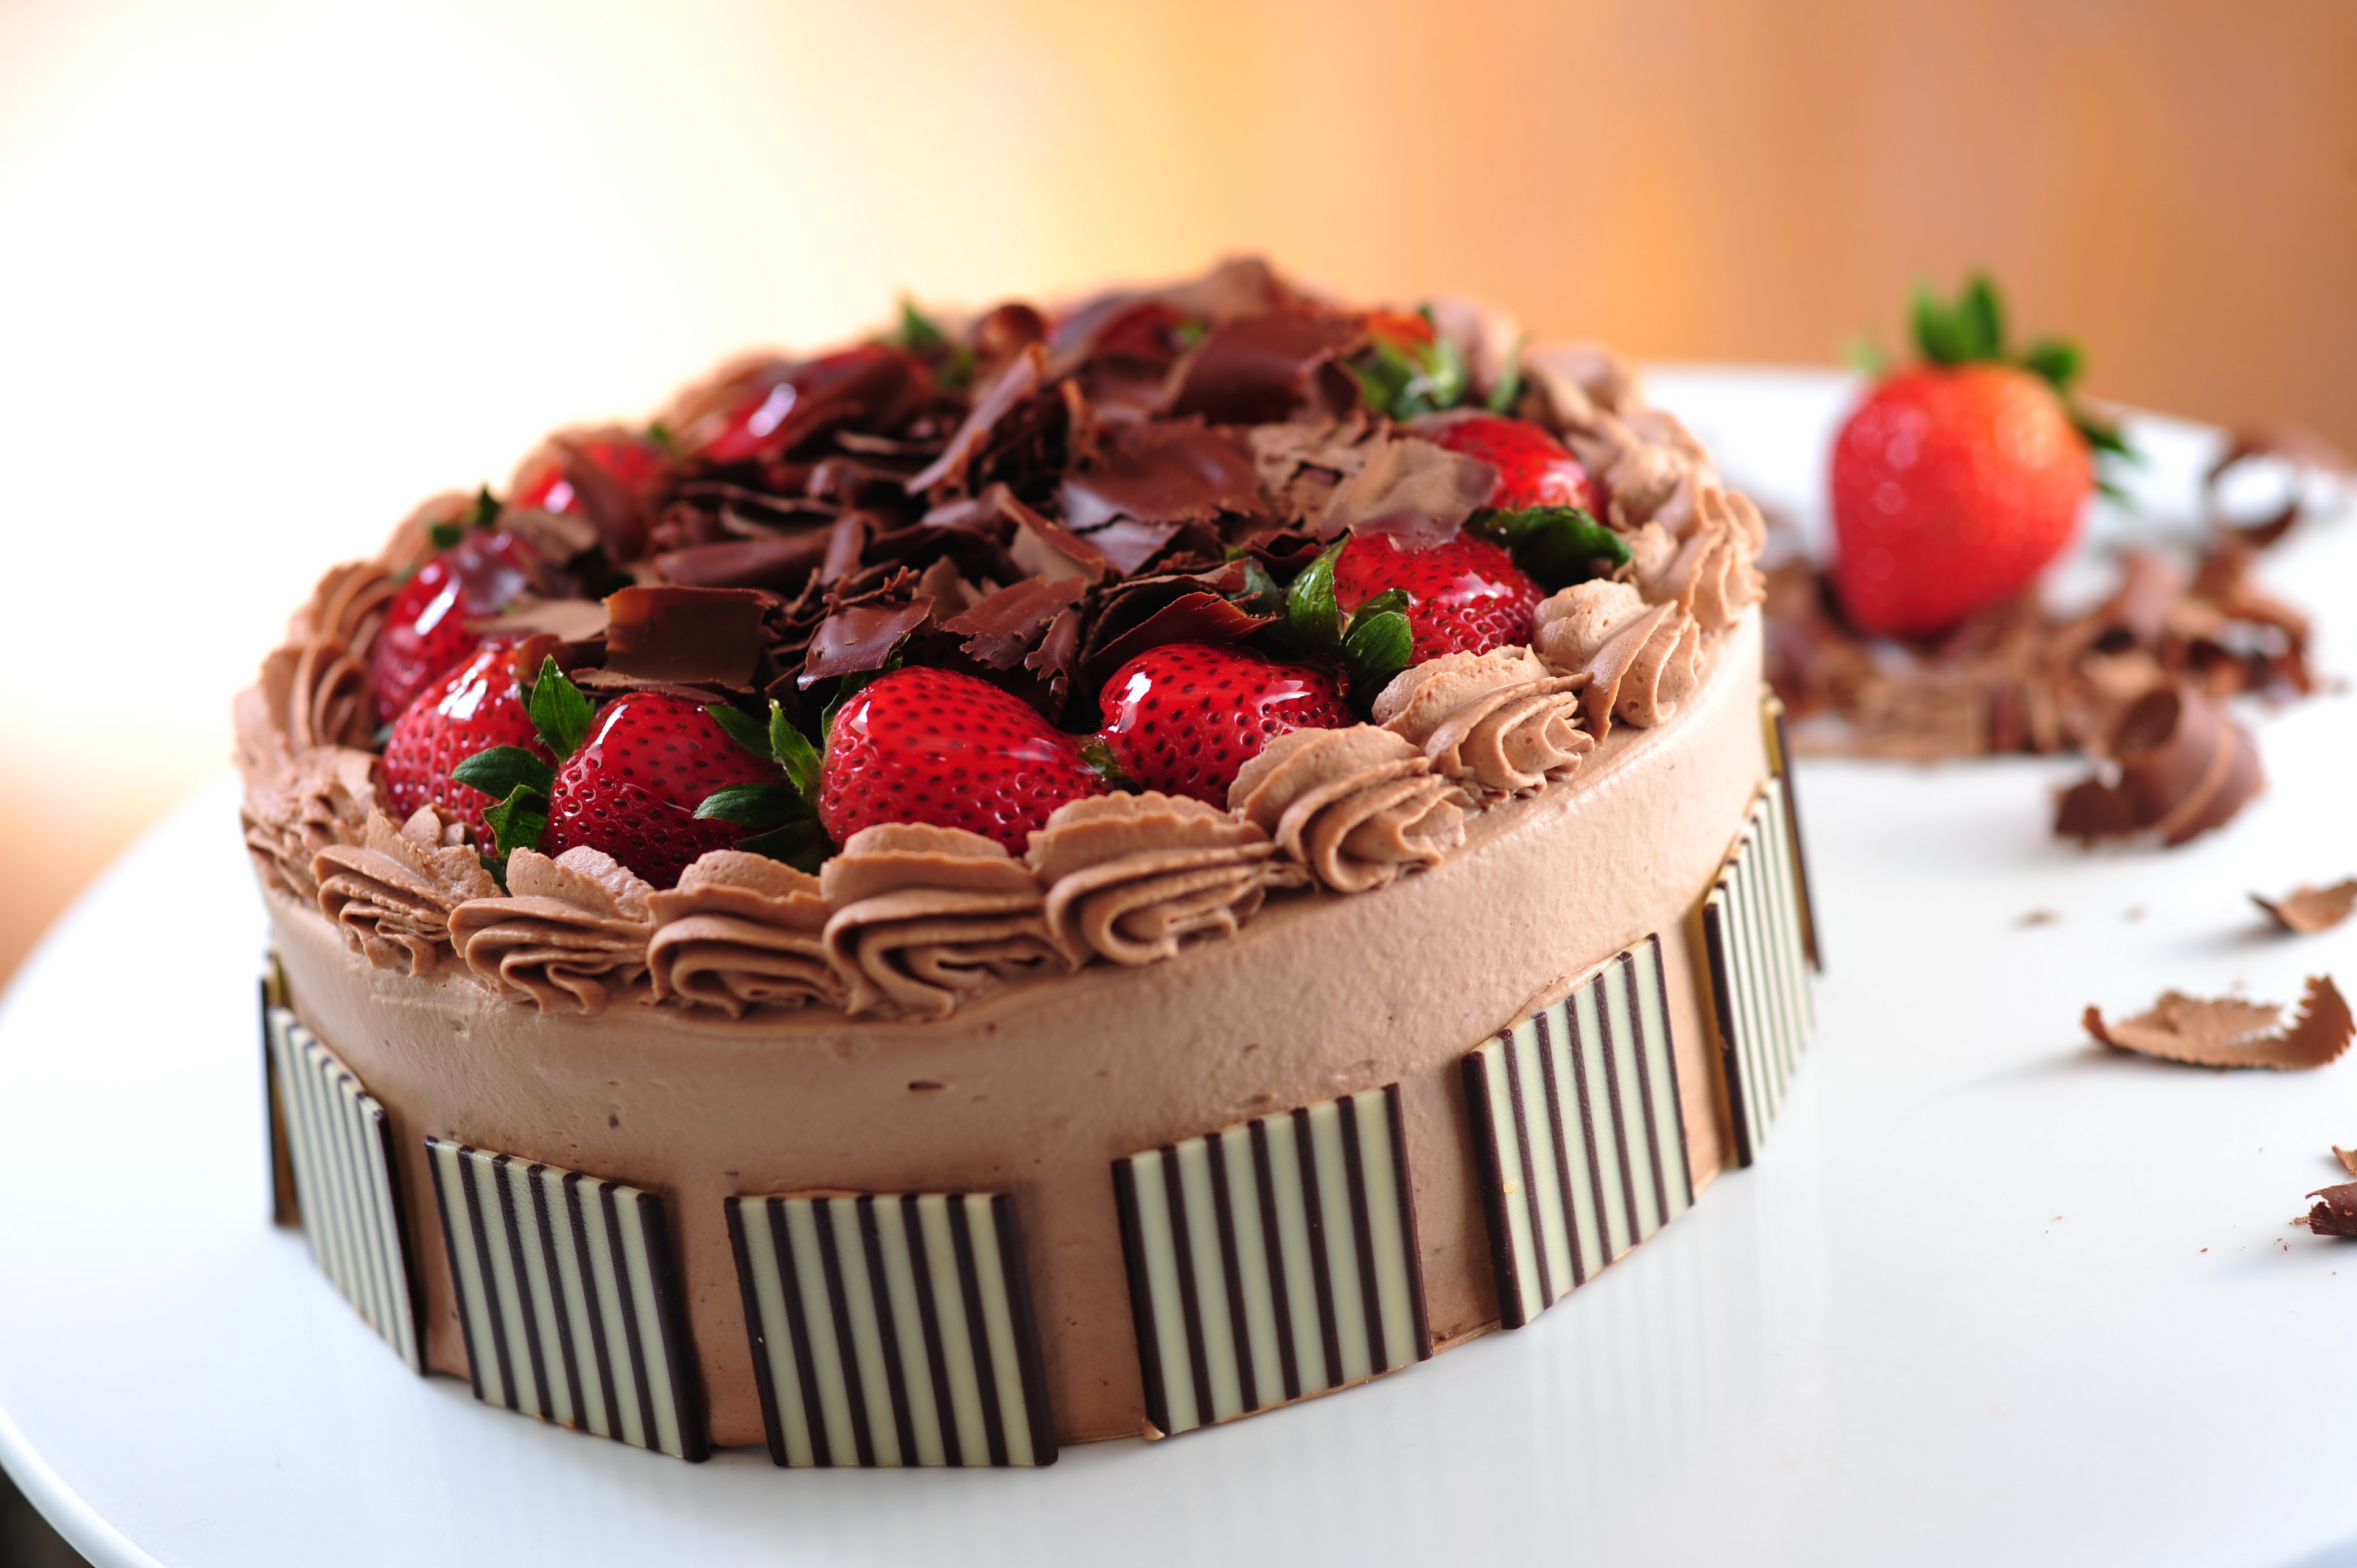 Над воротами занялась красивее торты. Красивые торты. Красивый шоколадный торт. Красивые тортики шоколадные. Красивые торты на день рождения.